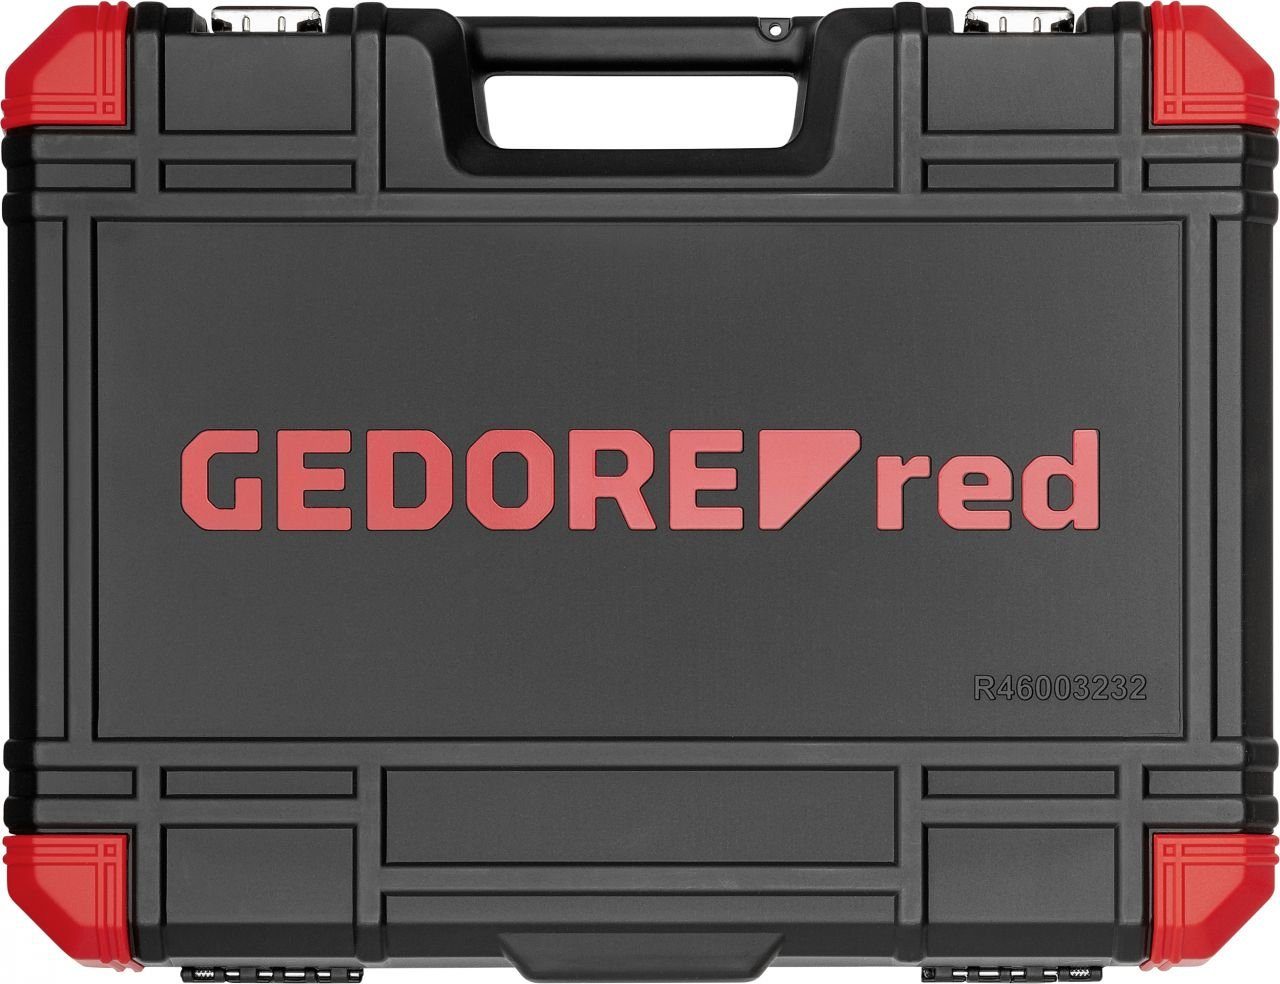 Gedore Red Steckschlüssel All-IN Red 1/4 R46003232 Gedore Steckschlüsselsatz